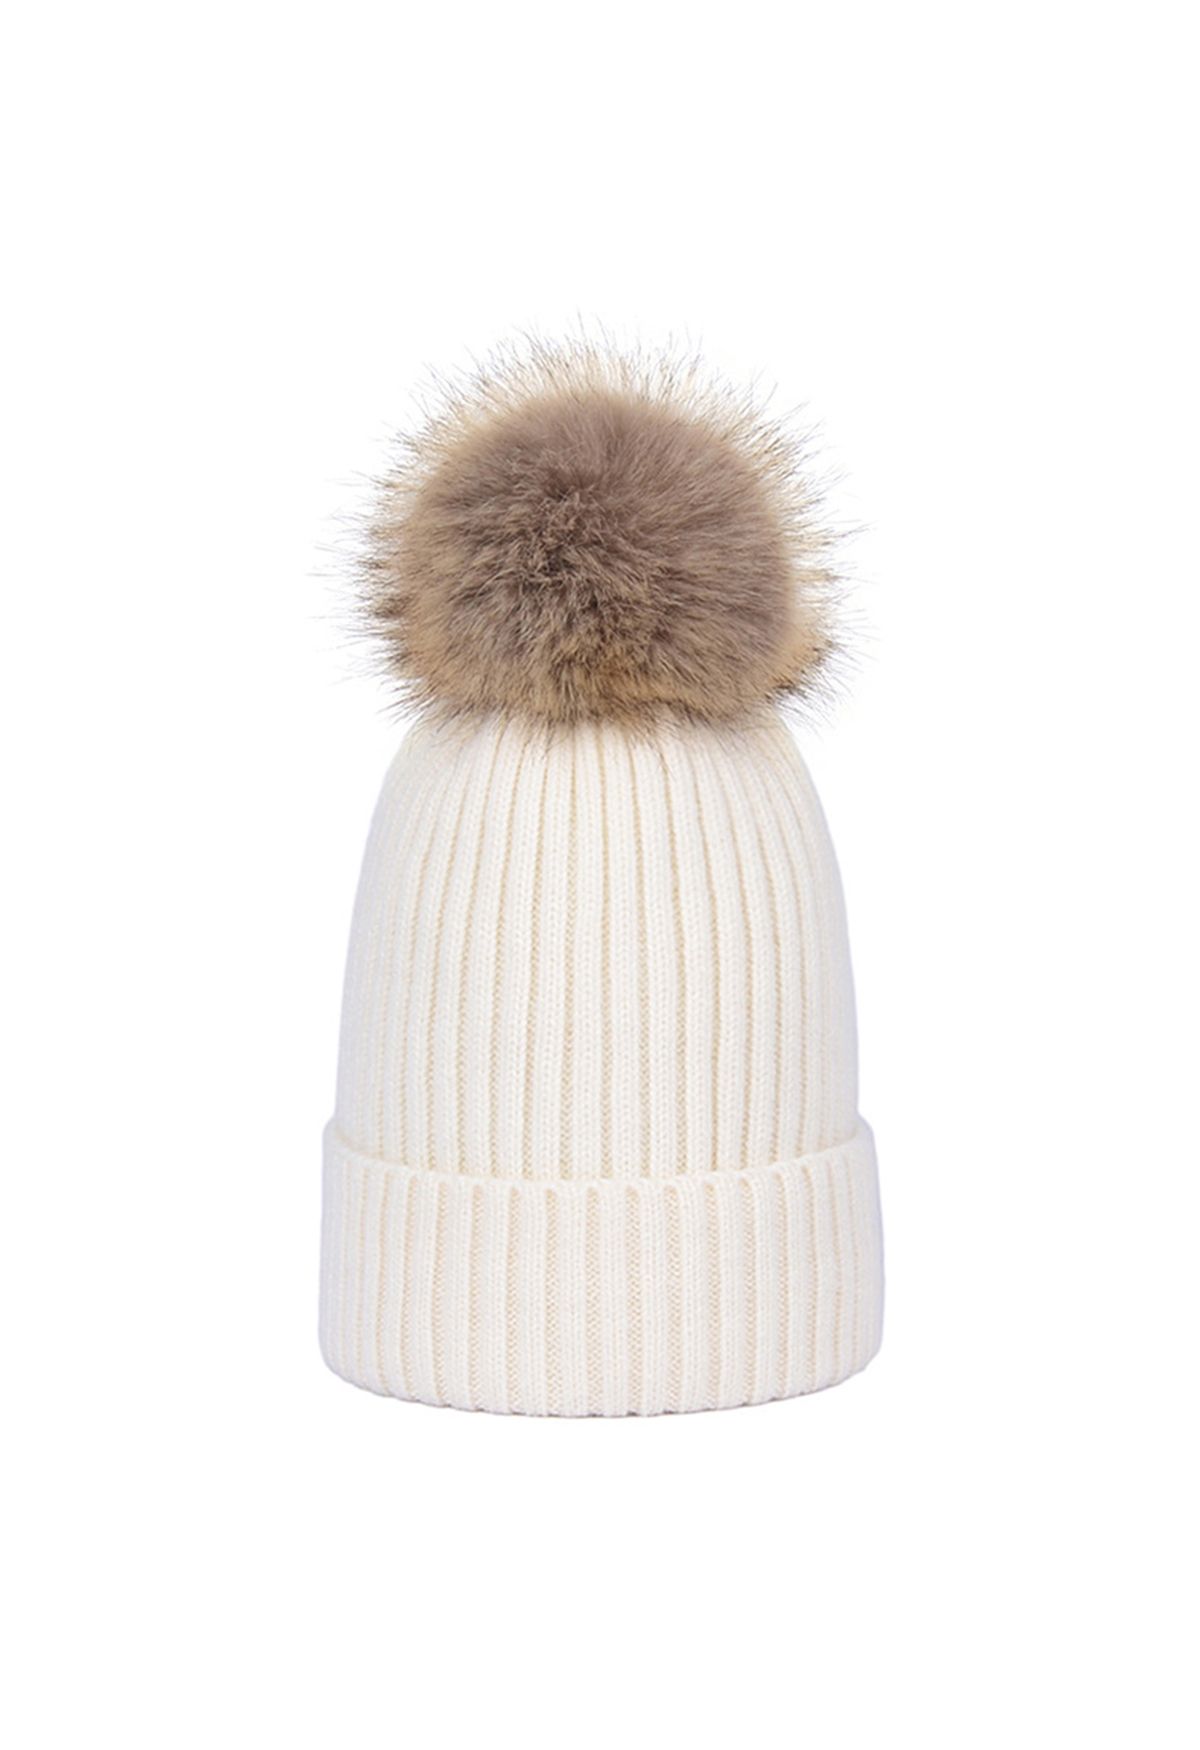 Pom-Pom Ribbed Knit Beanie Hat in Ivory